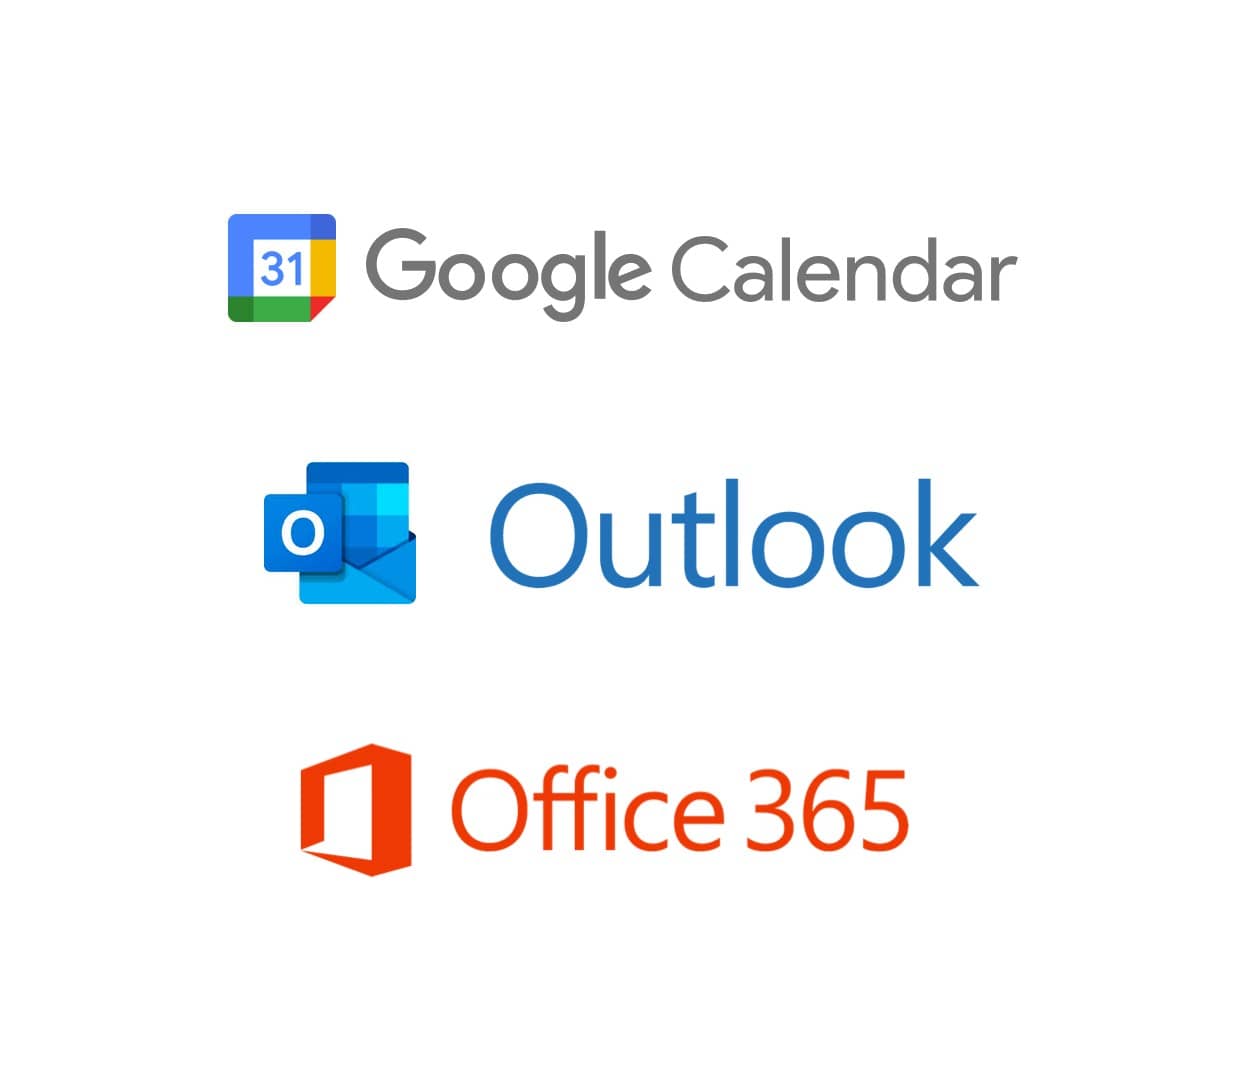 Company logos for Google Calendar, Outlook, Office 365